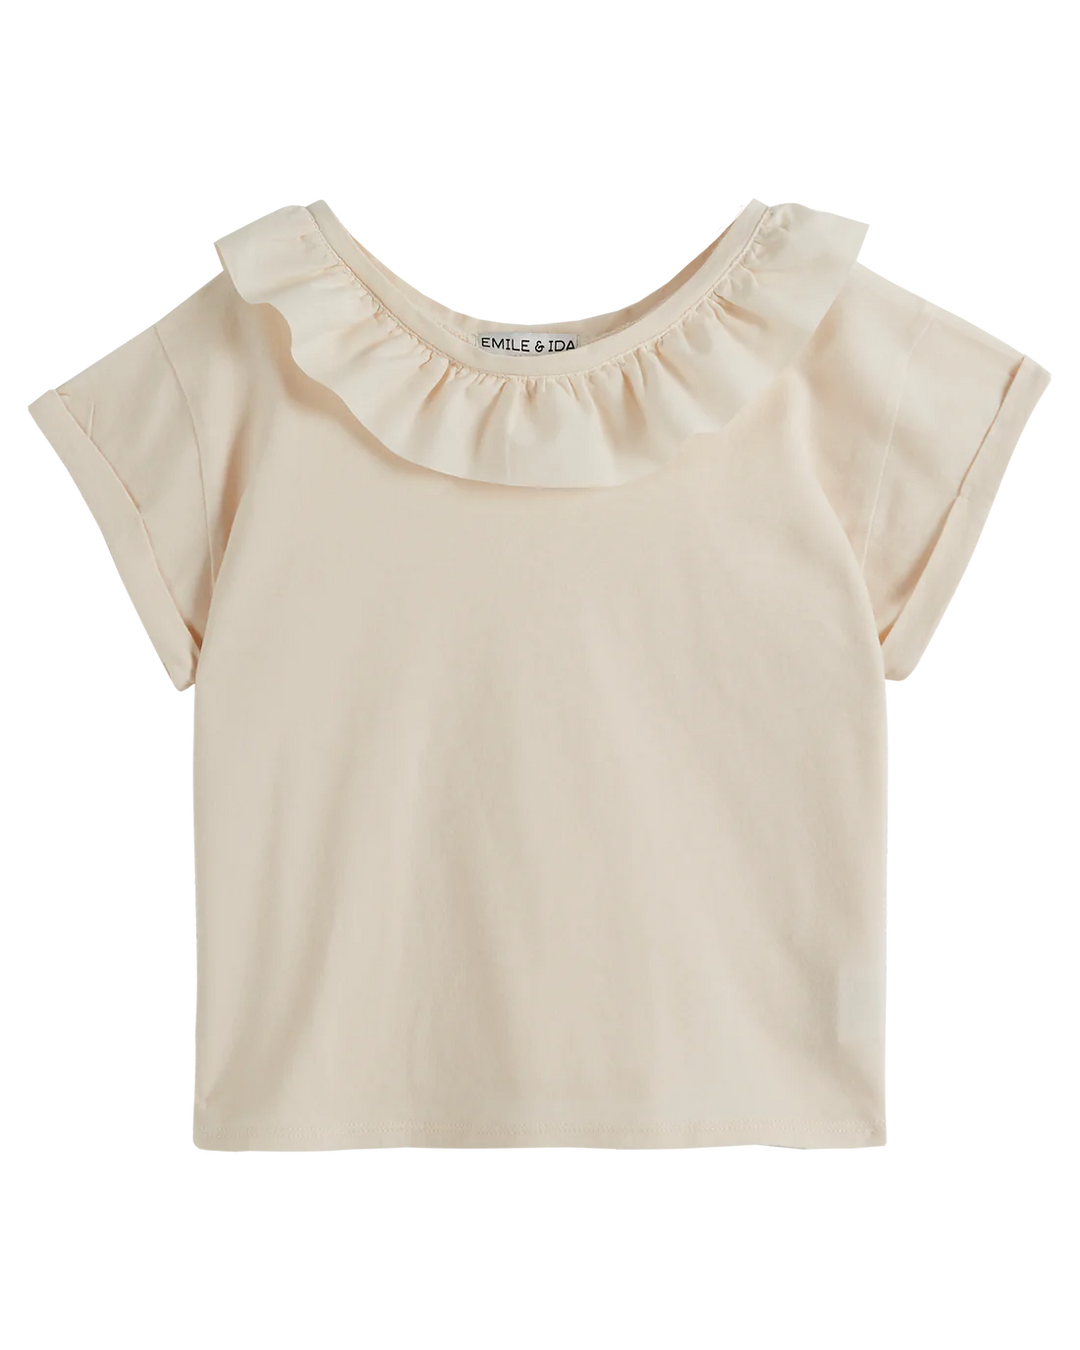 T-shirt Girl - Collar Cream - قصيرة